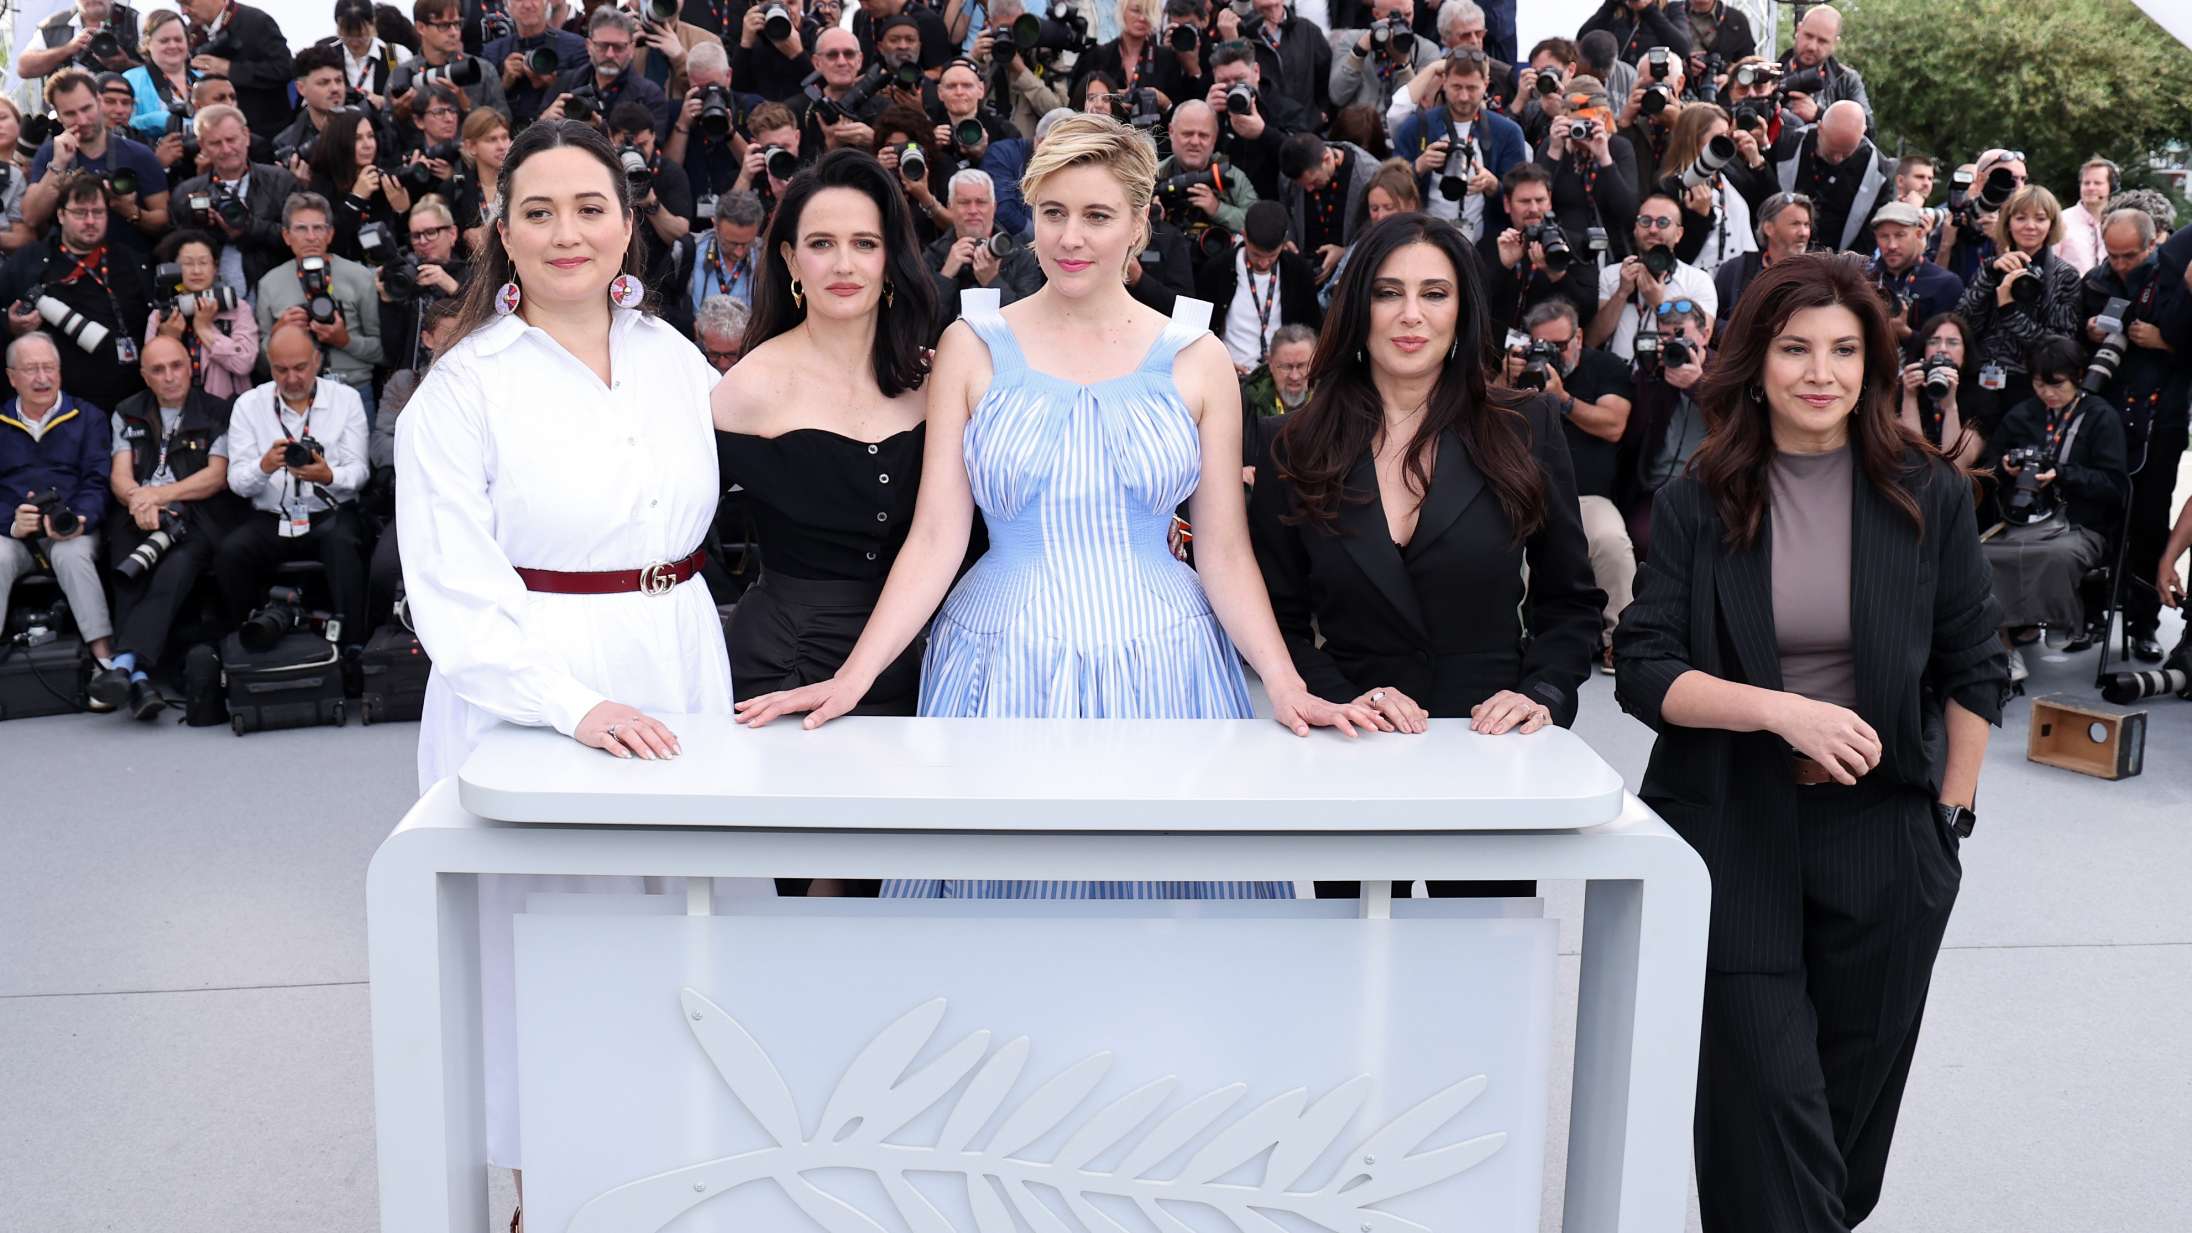 Cannes-festivalen håbede på en åbning uden drama – sådan gik det ikke